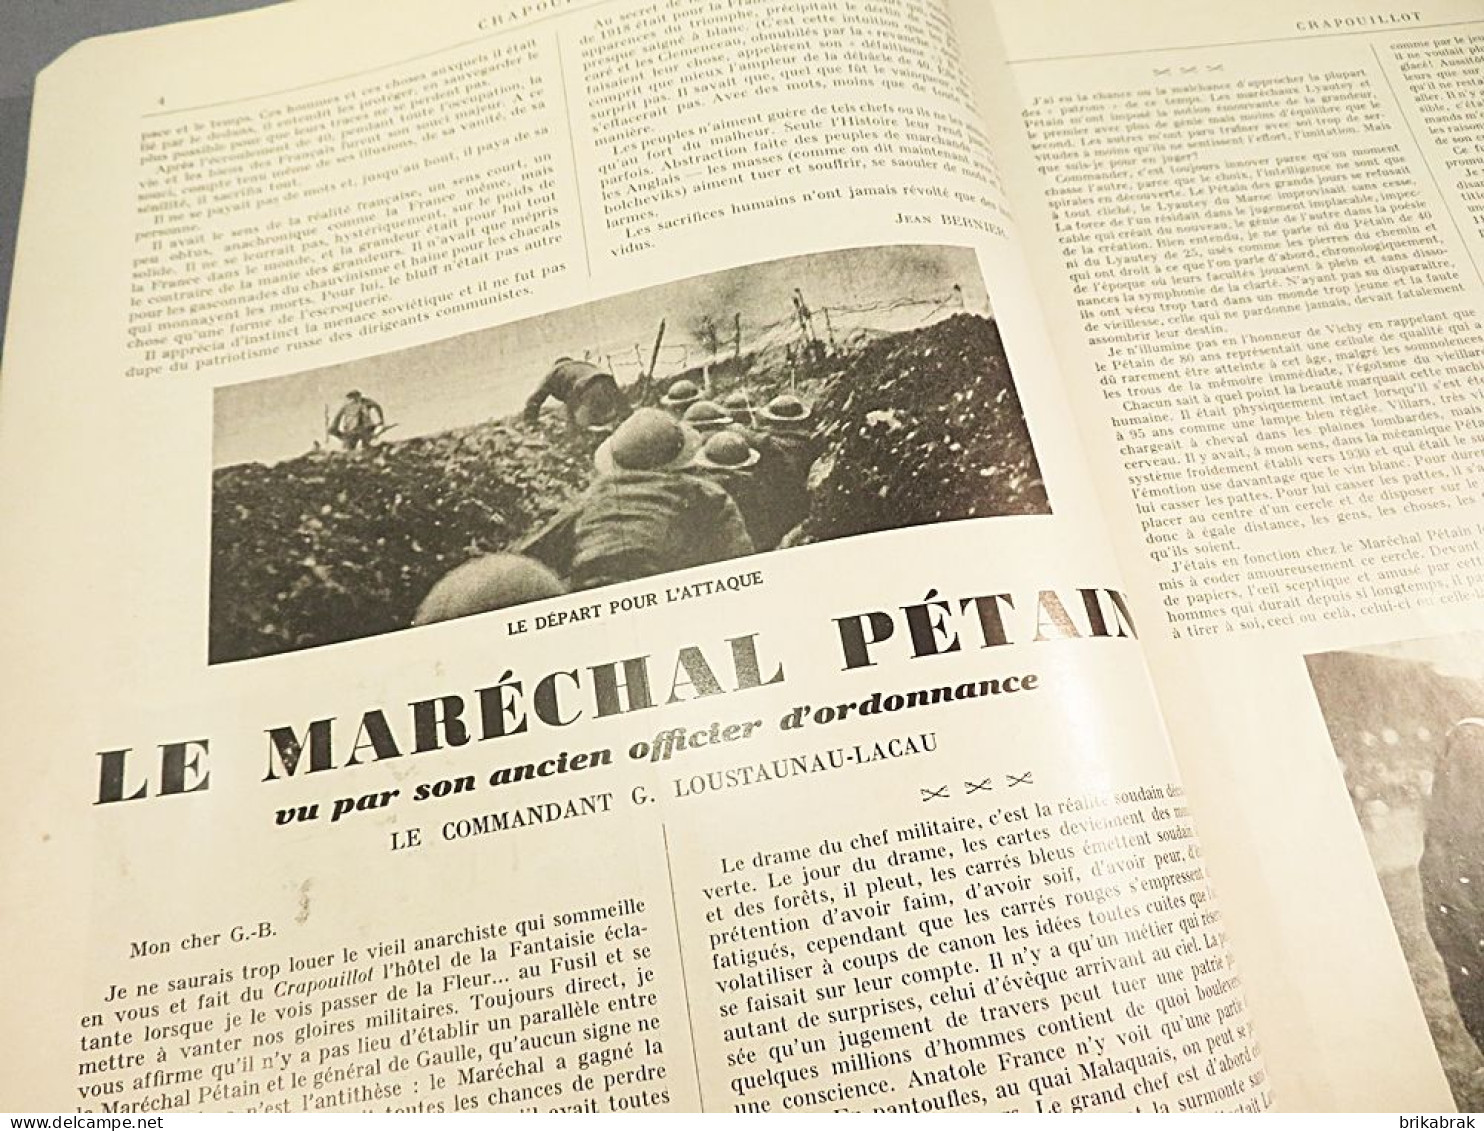 + JOURNAL LE CRAPOUILLOT N° 17 PETAIN DE GAULLE 1952 - Histoire Revue